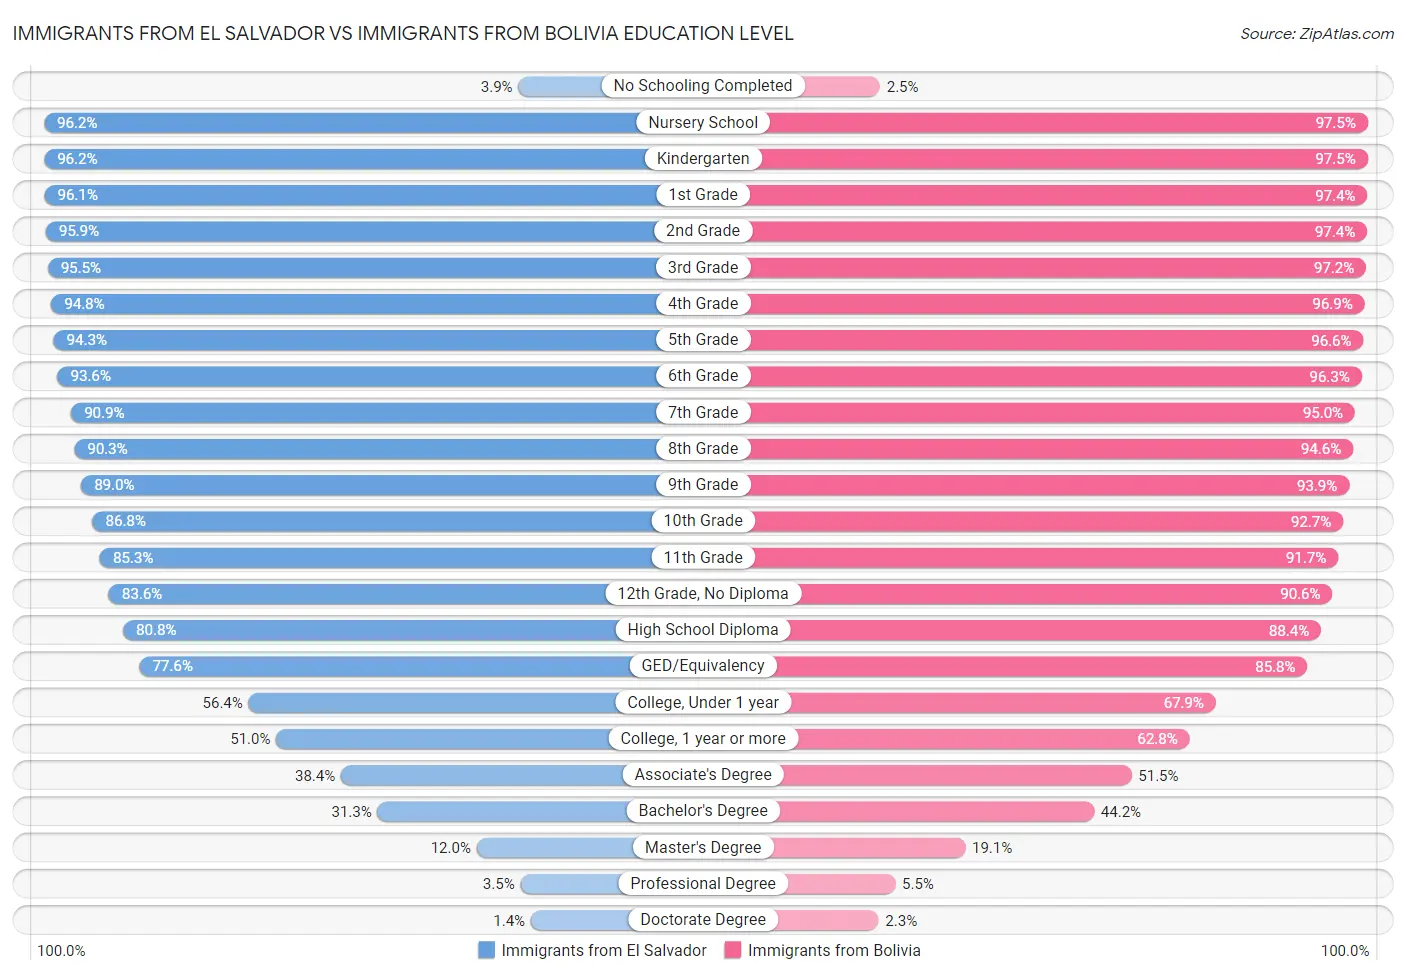 Immigrants from El Salvador vs Immigrants from Bolivia Education Level